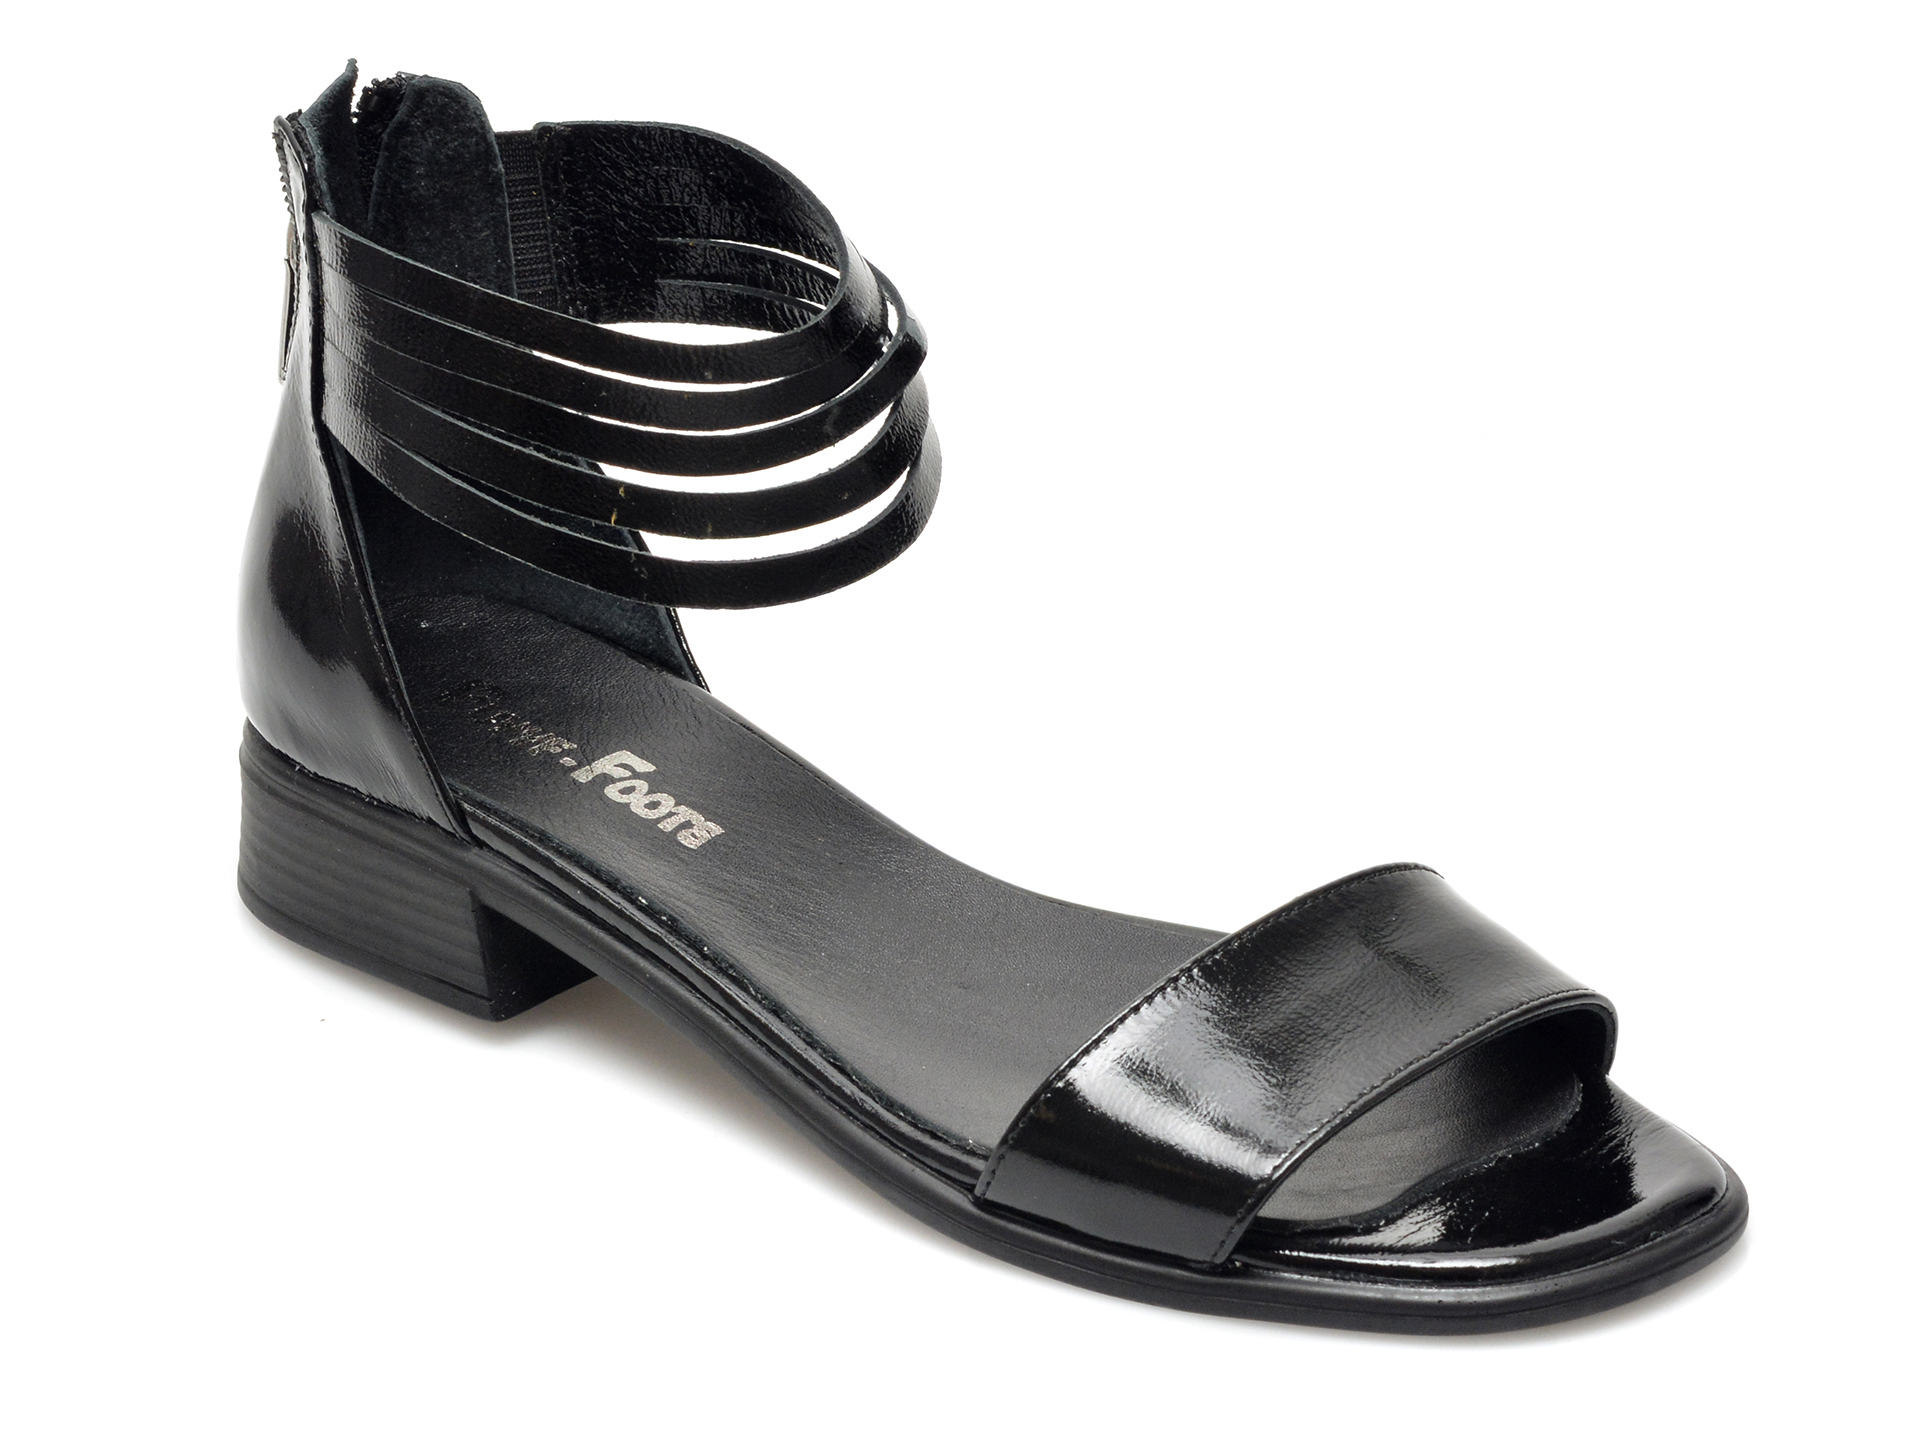 Sandale PUYYF FOOTS negre, 18206, din piele naturala lacuita 2023 ❤️ Pret Super Black Friday otter.ro imagine noua 2022